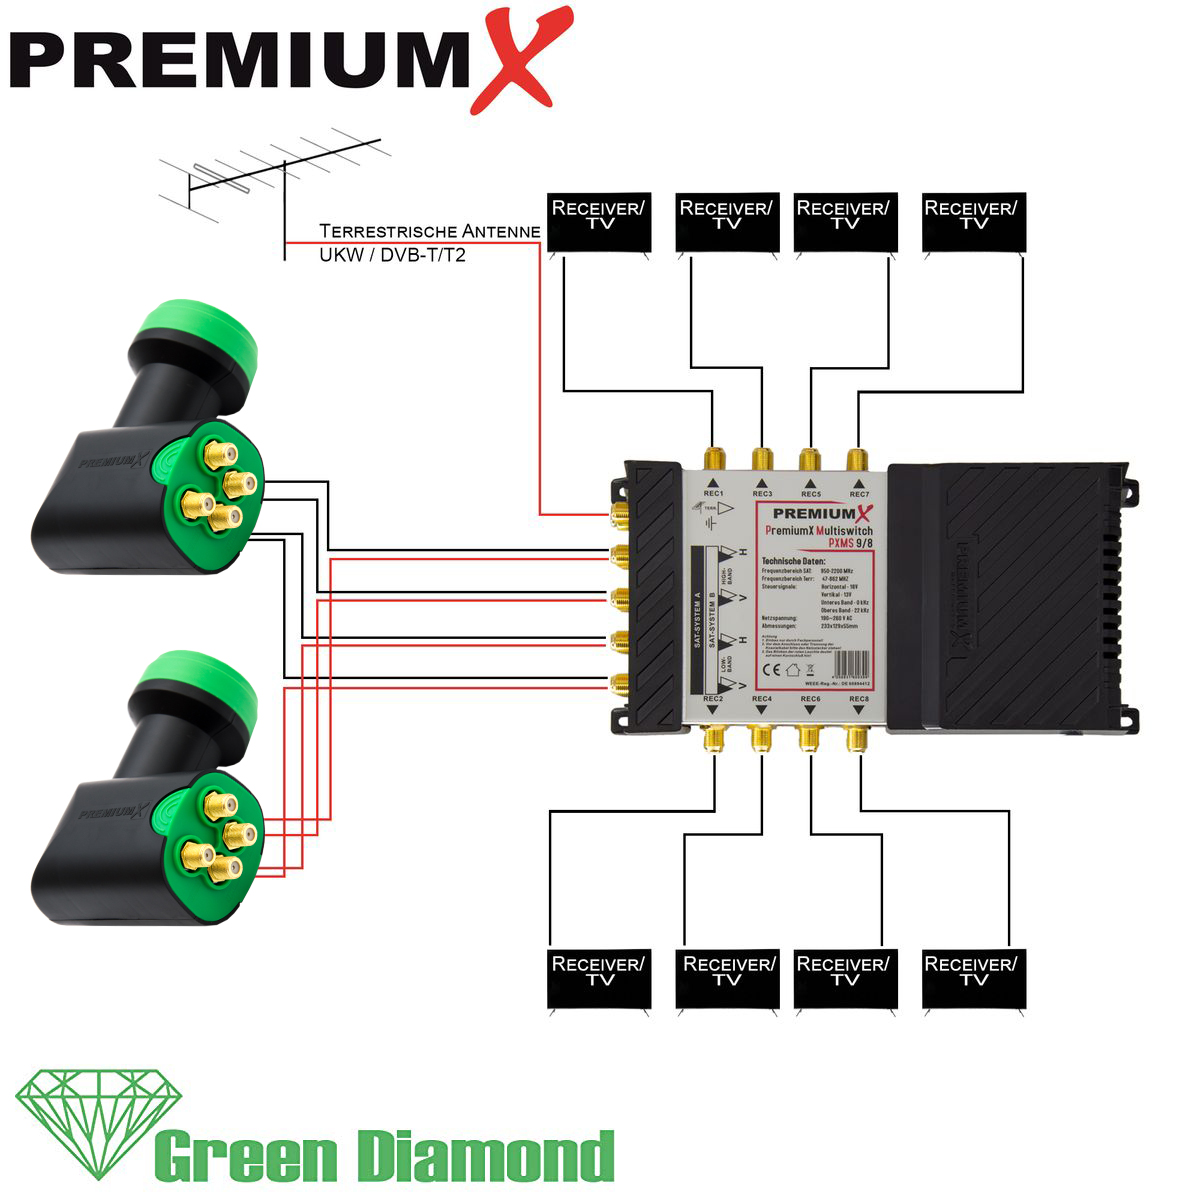 Quattro SAT Multifeed F-Stecker Multischalter PREMIUMX Sat-Multischalter LNB 9/8 32x 2x Set Diamond Green